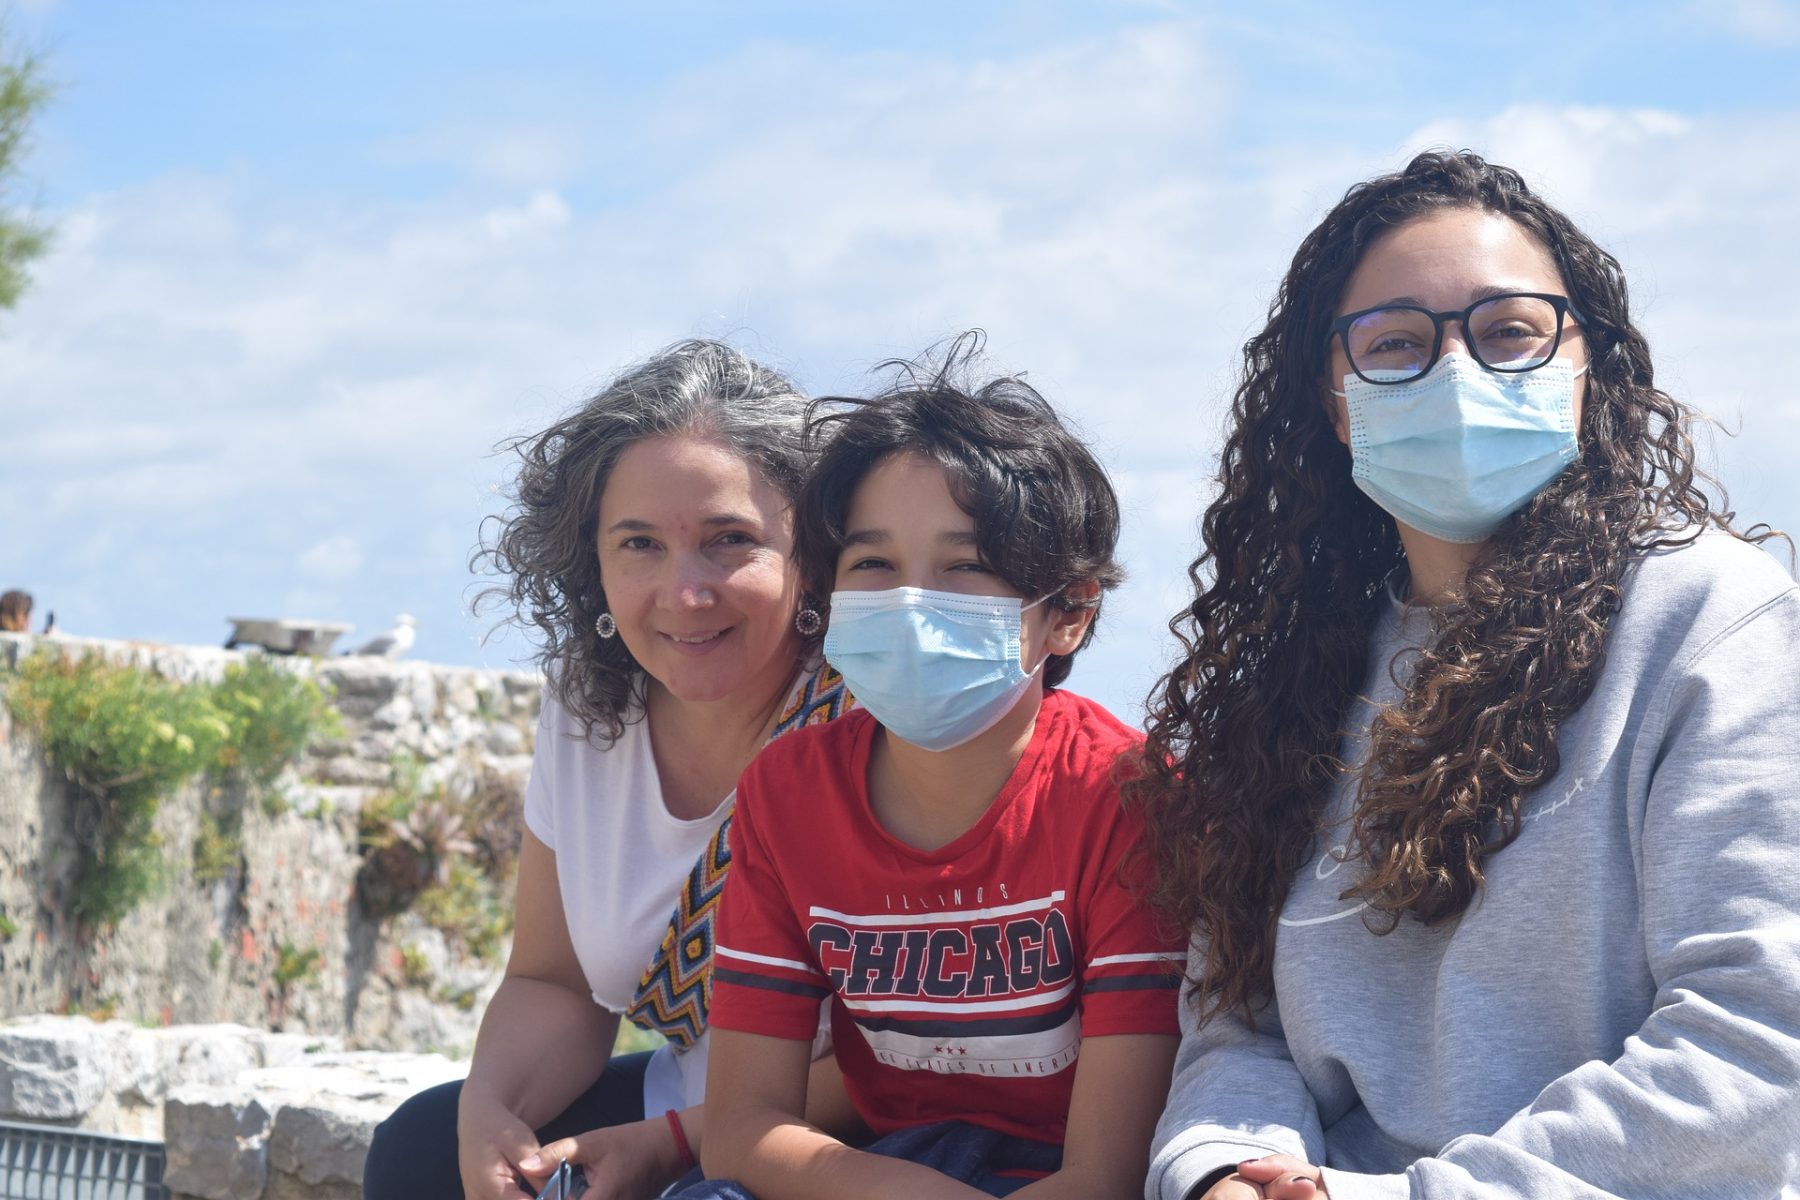 Μάσκες συναισθήματα: Τα παιδιά είναι σε θέση να αναγνωρίσουν τα συναισθήματα πίσω από τις μάσκες